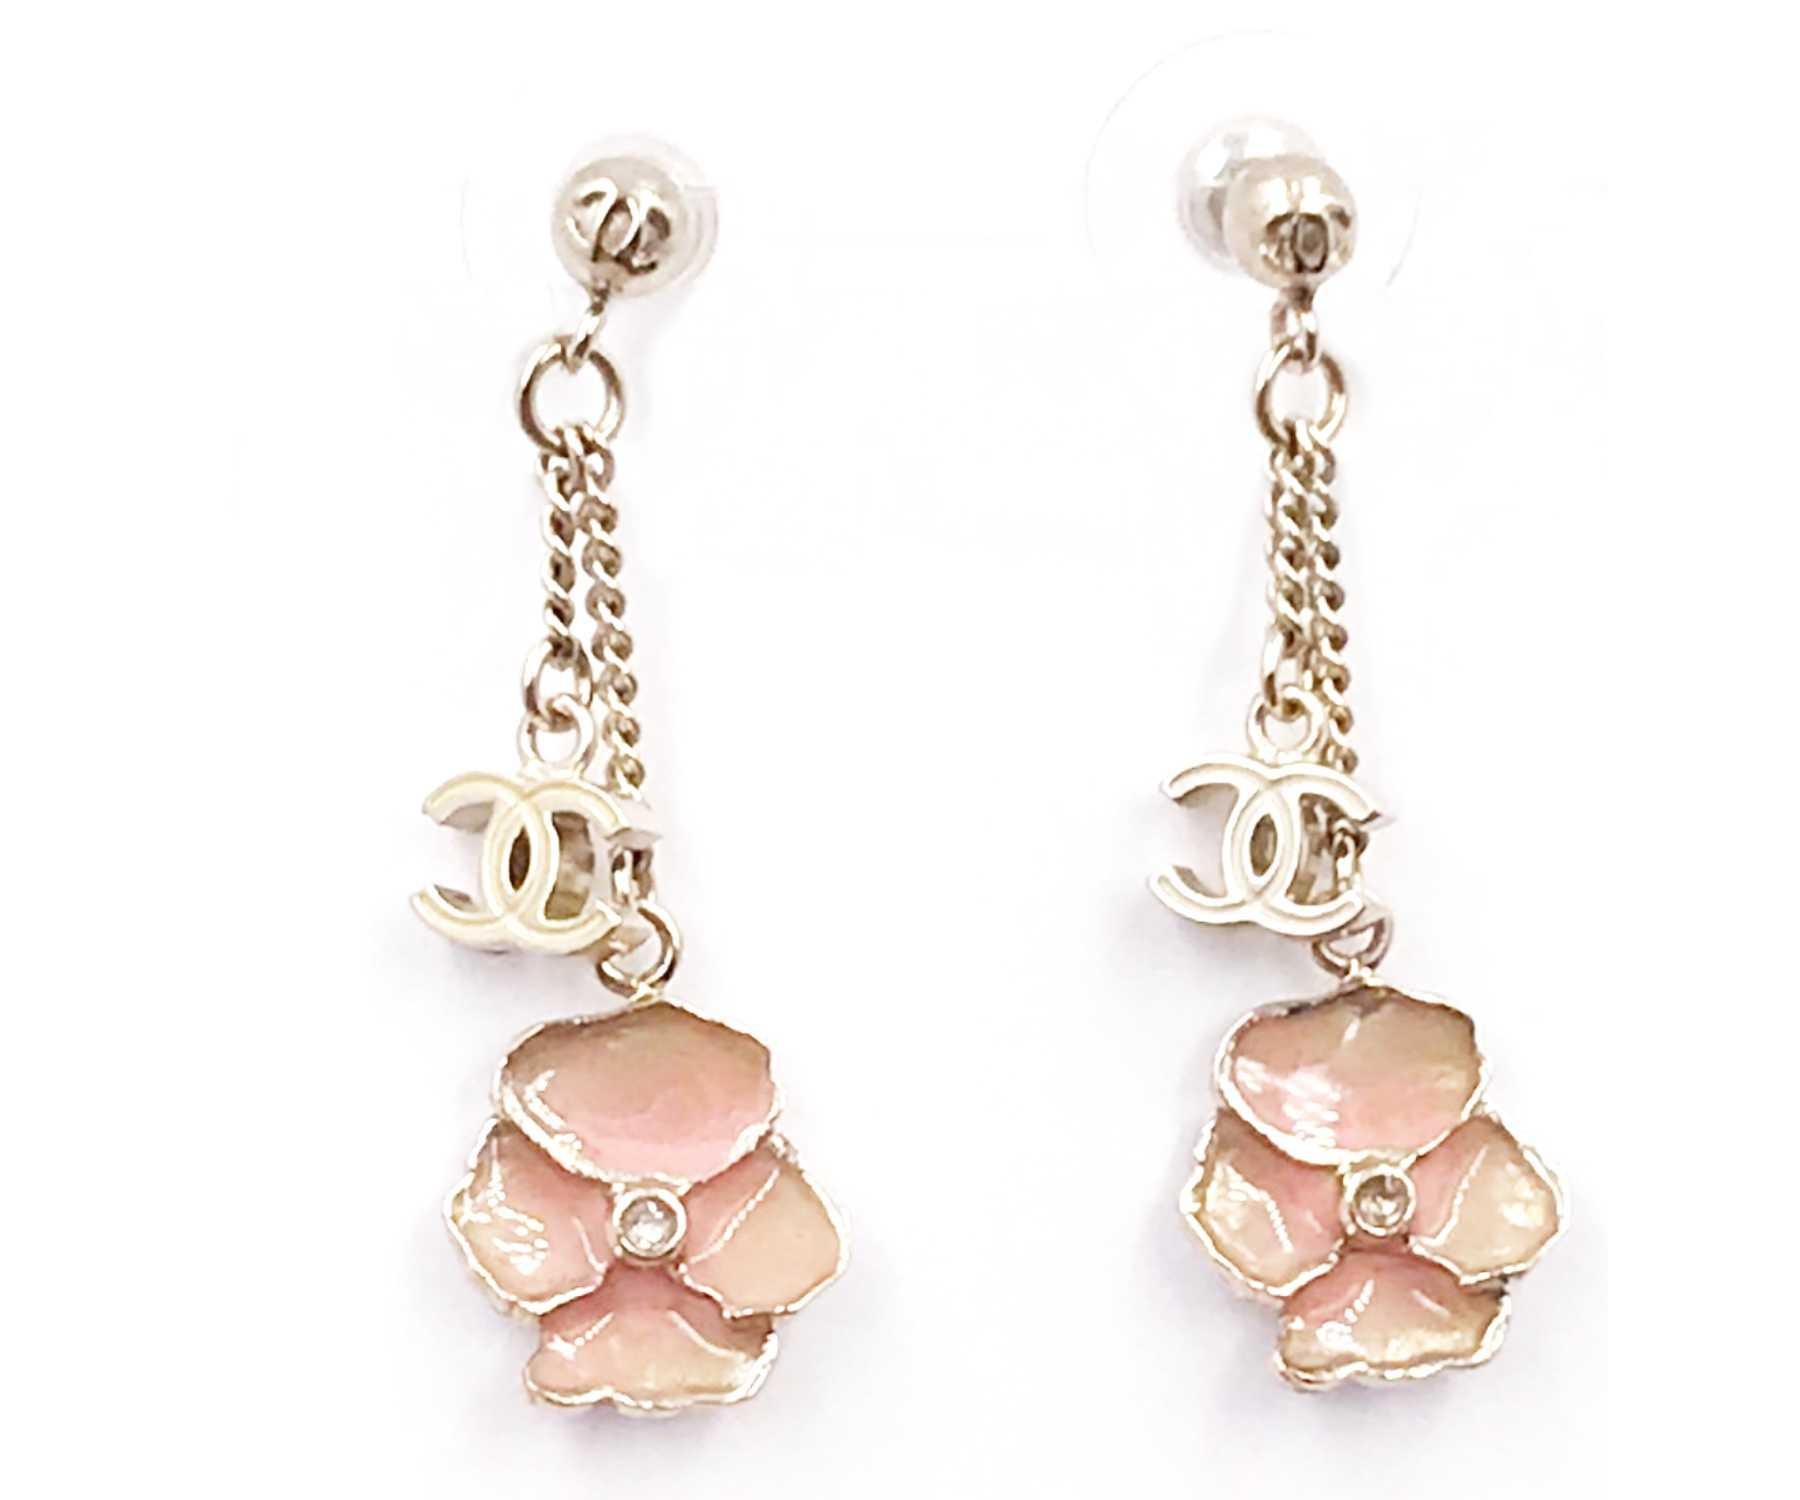 Chanel Gold CC Rosa Blume-Ohrringe mit durchbrochenen Ohrringen

*Markiert 13
*Hergestellt in Italien
*Kommt mit originalem Staubbeutel

-Sie ist ungefähr 1,6